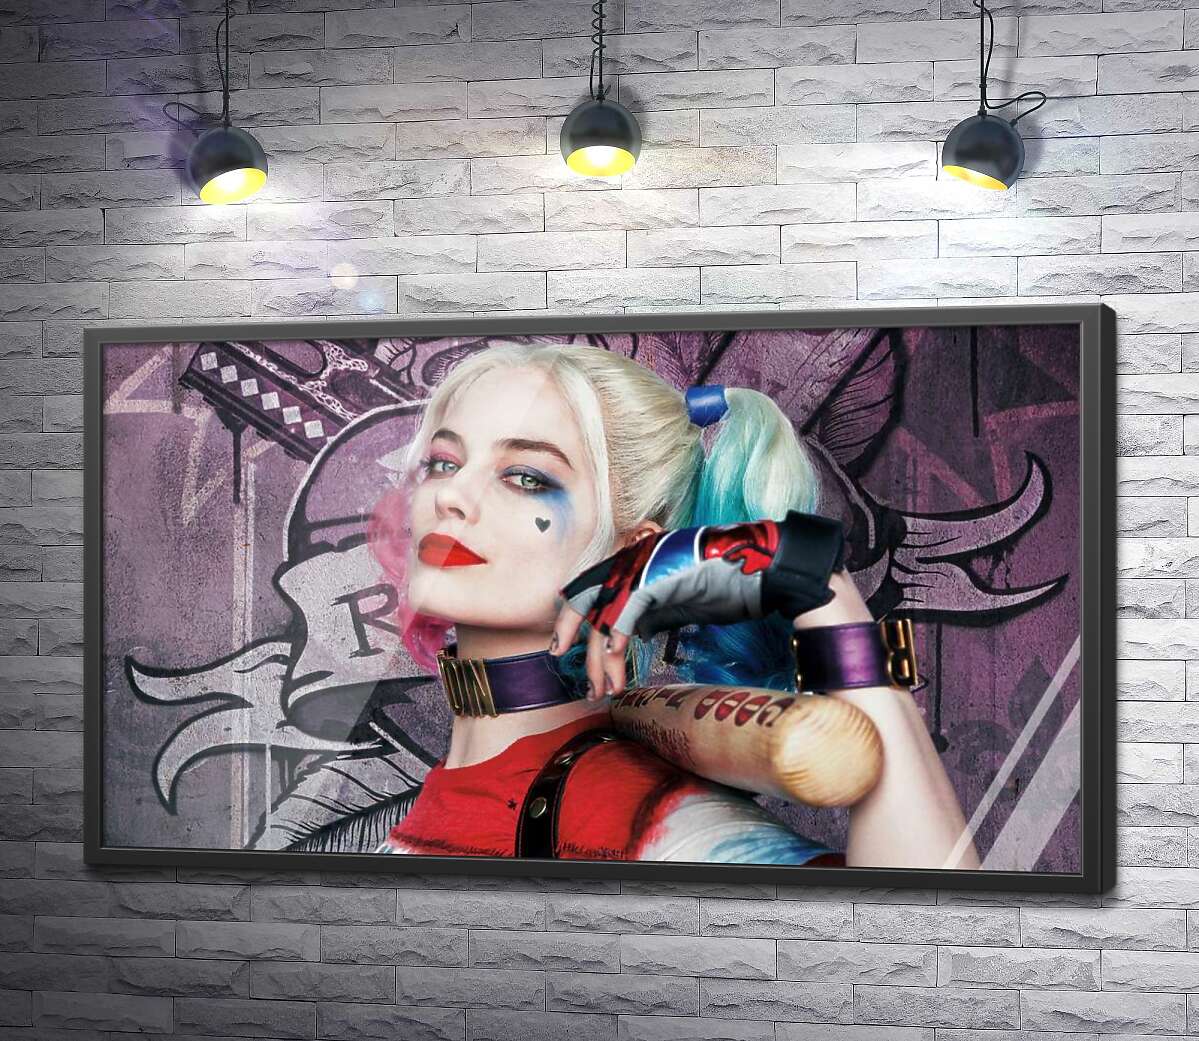 постер Яркая Марго Робби (Margot Robbie) в образе провокативной Харли Квинн